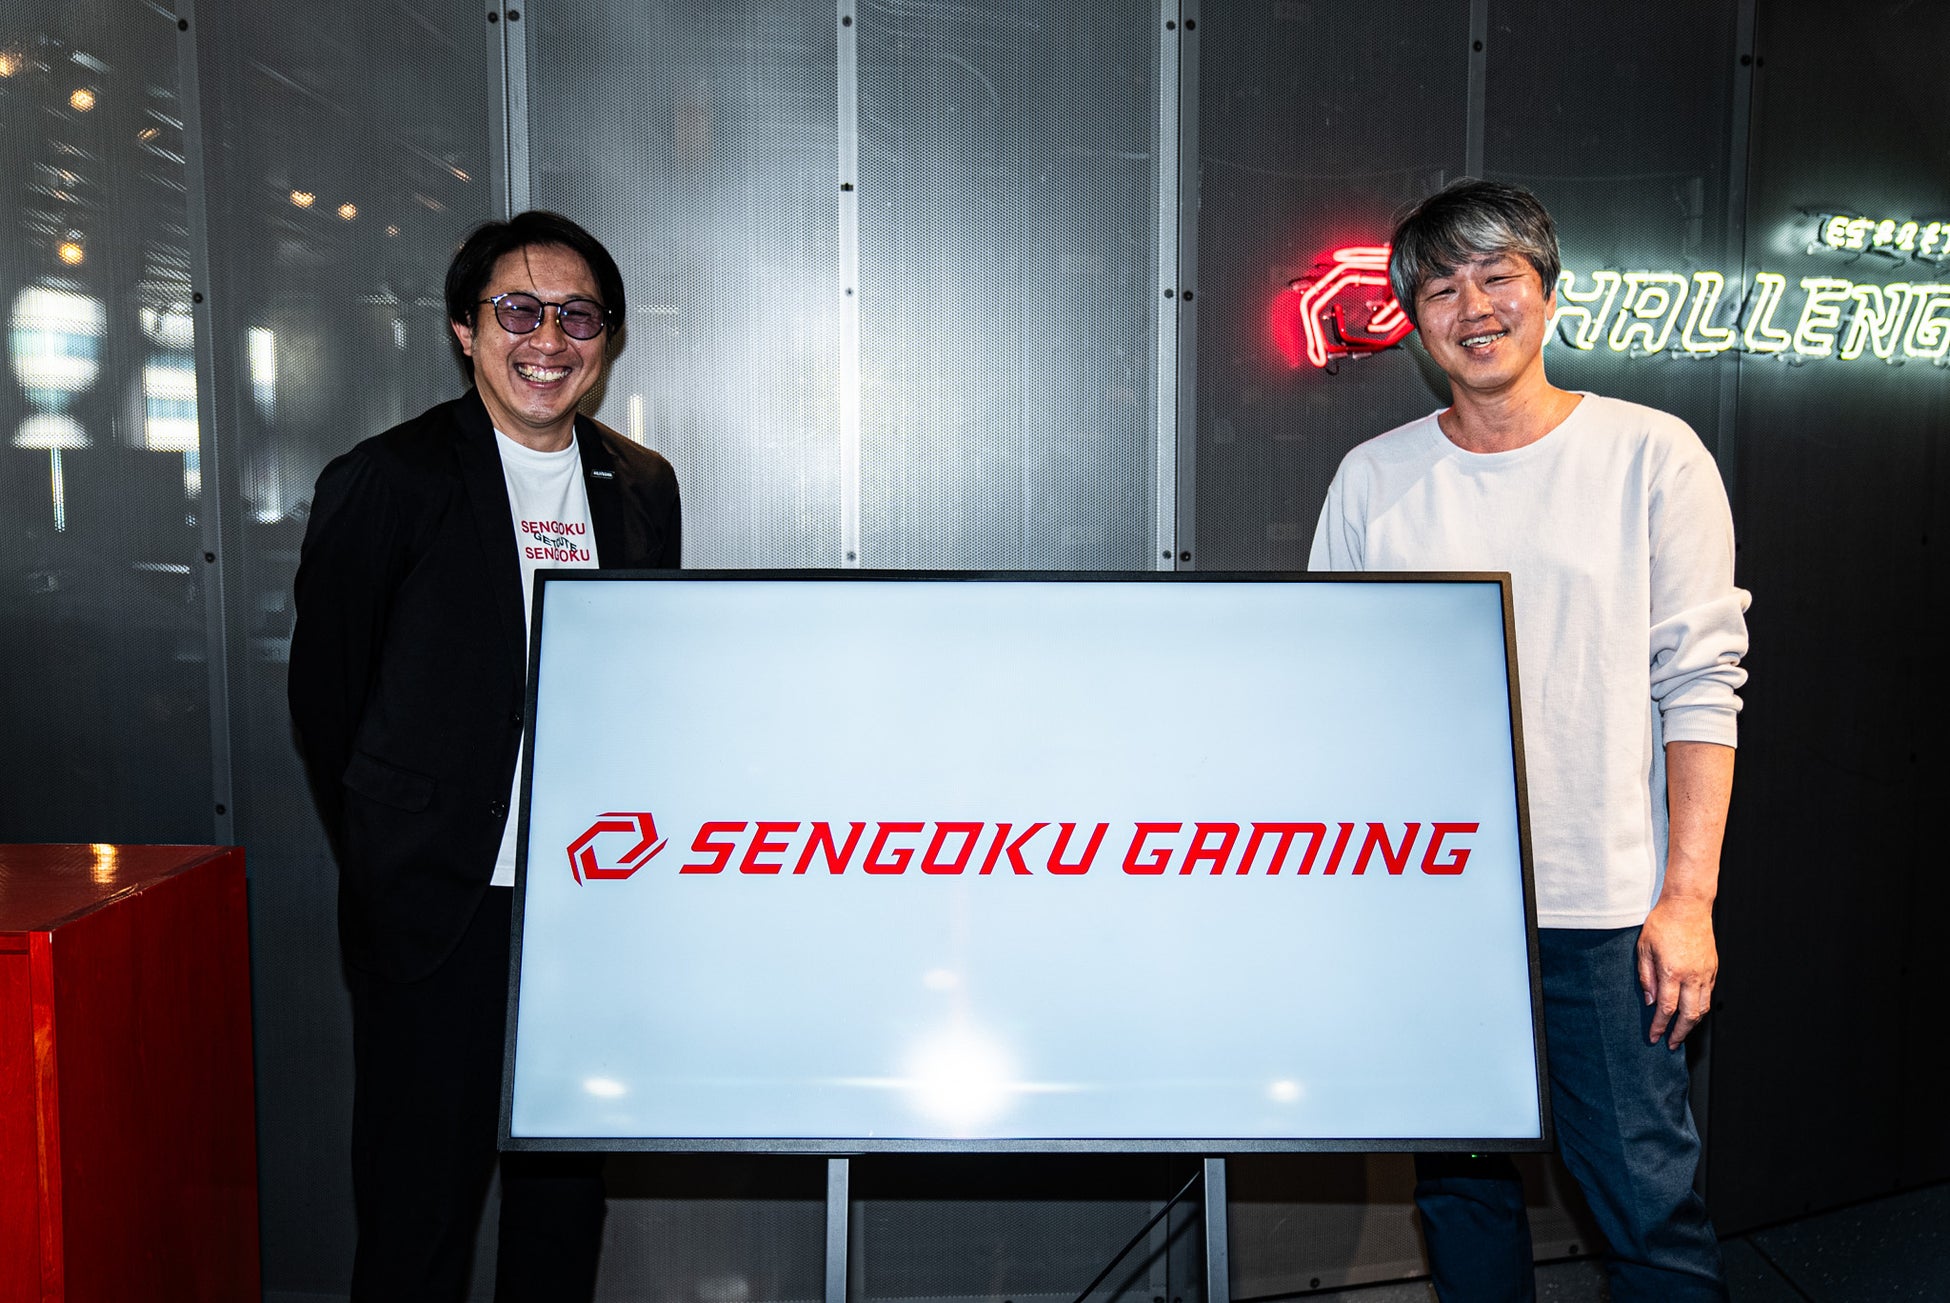 中島賢一氏がプロeスポーツチーム Sengoku Gaming公式アンバサダー『軍師』に就任